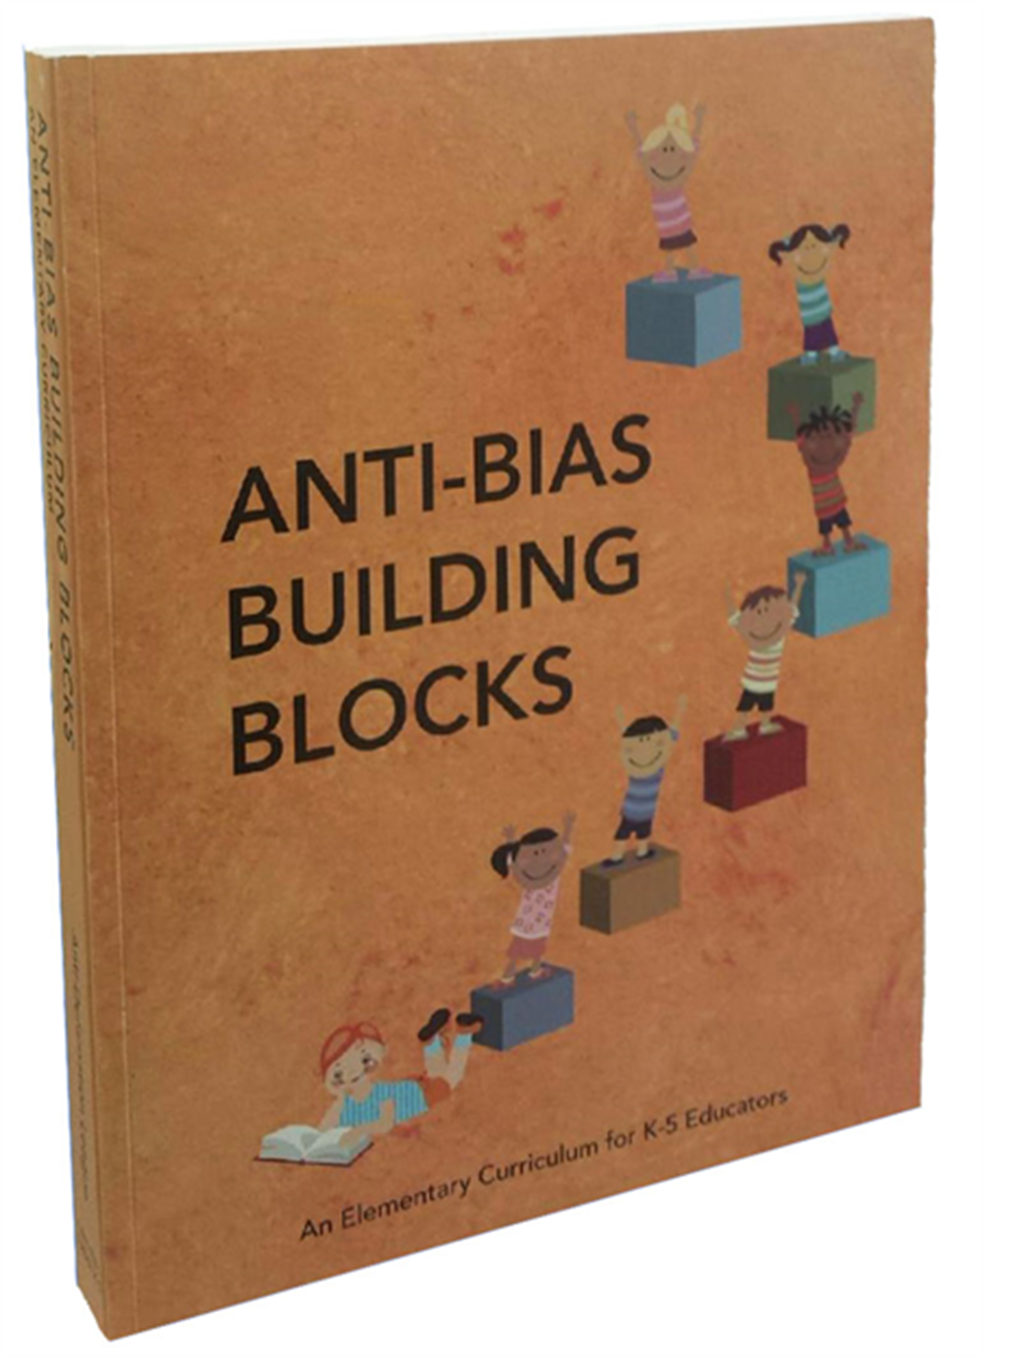 Anti-Bias Building Blocks - image